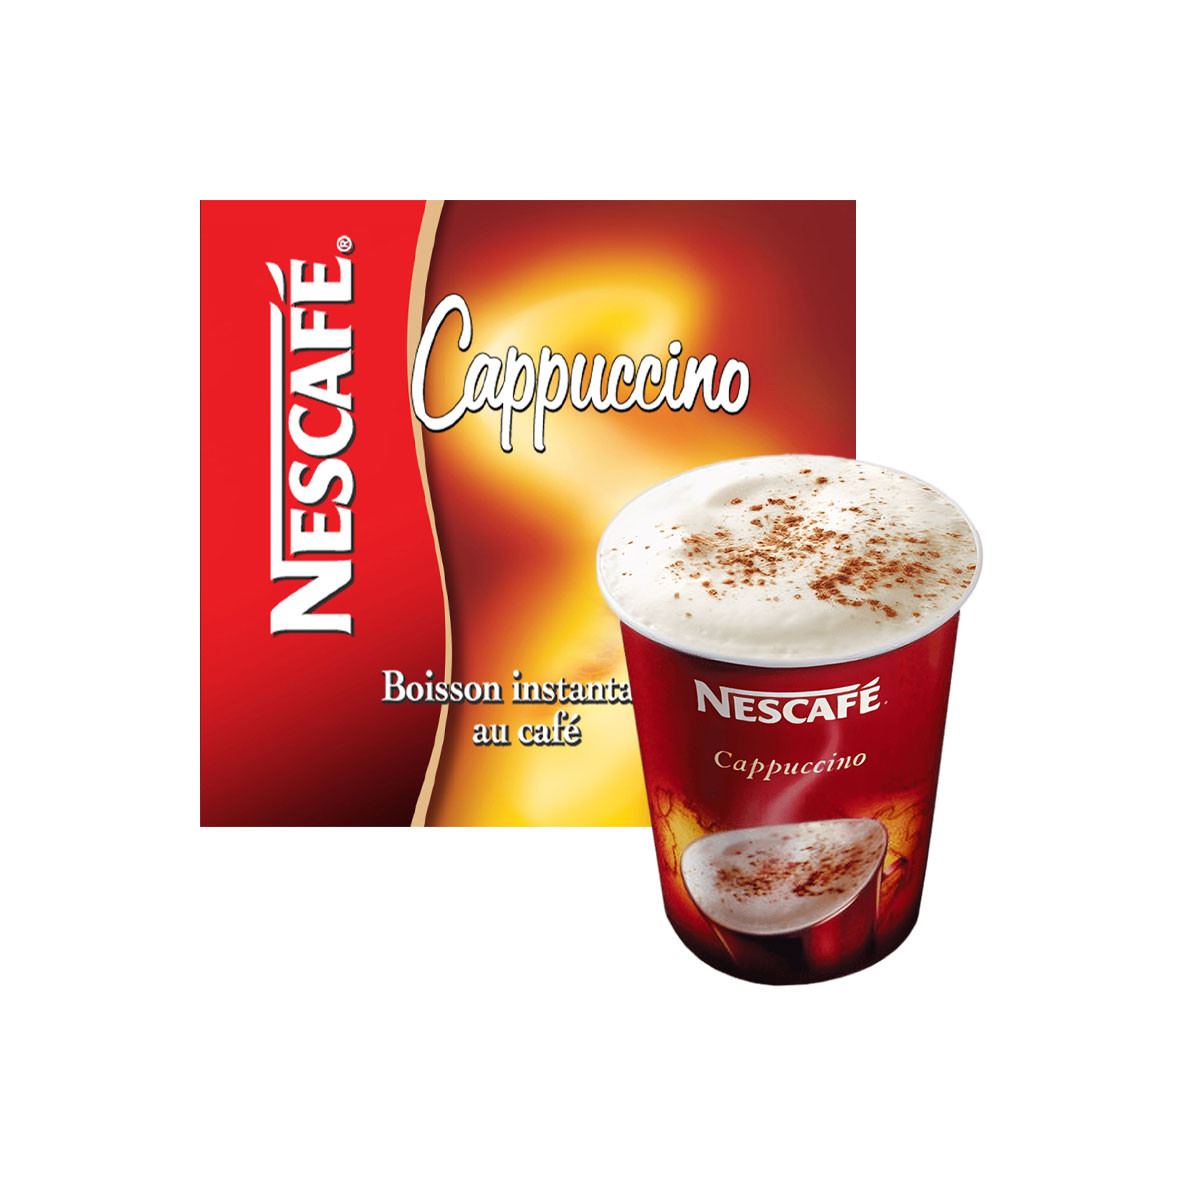 NESCAFÉ - Rien de mieux qu'un cappuccino Noisette Nescafé